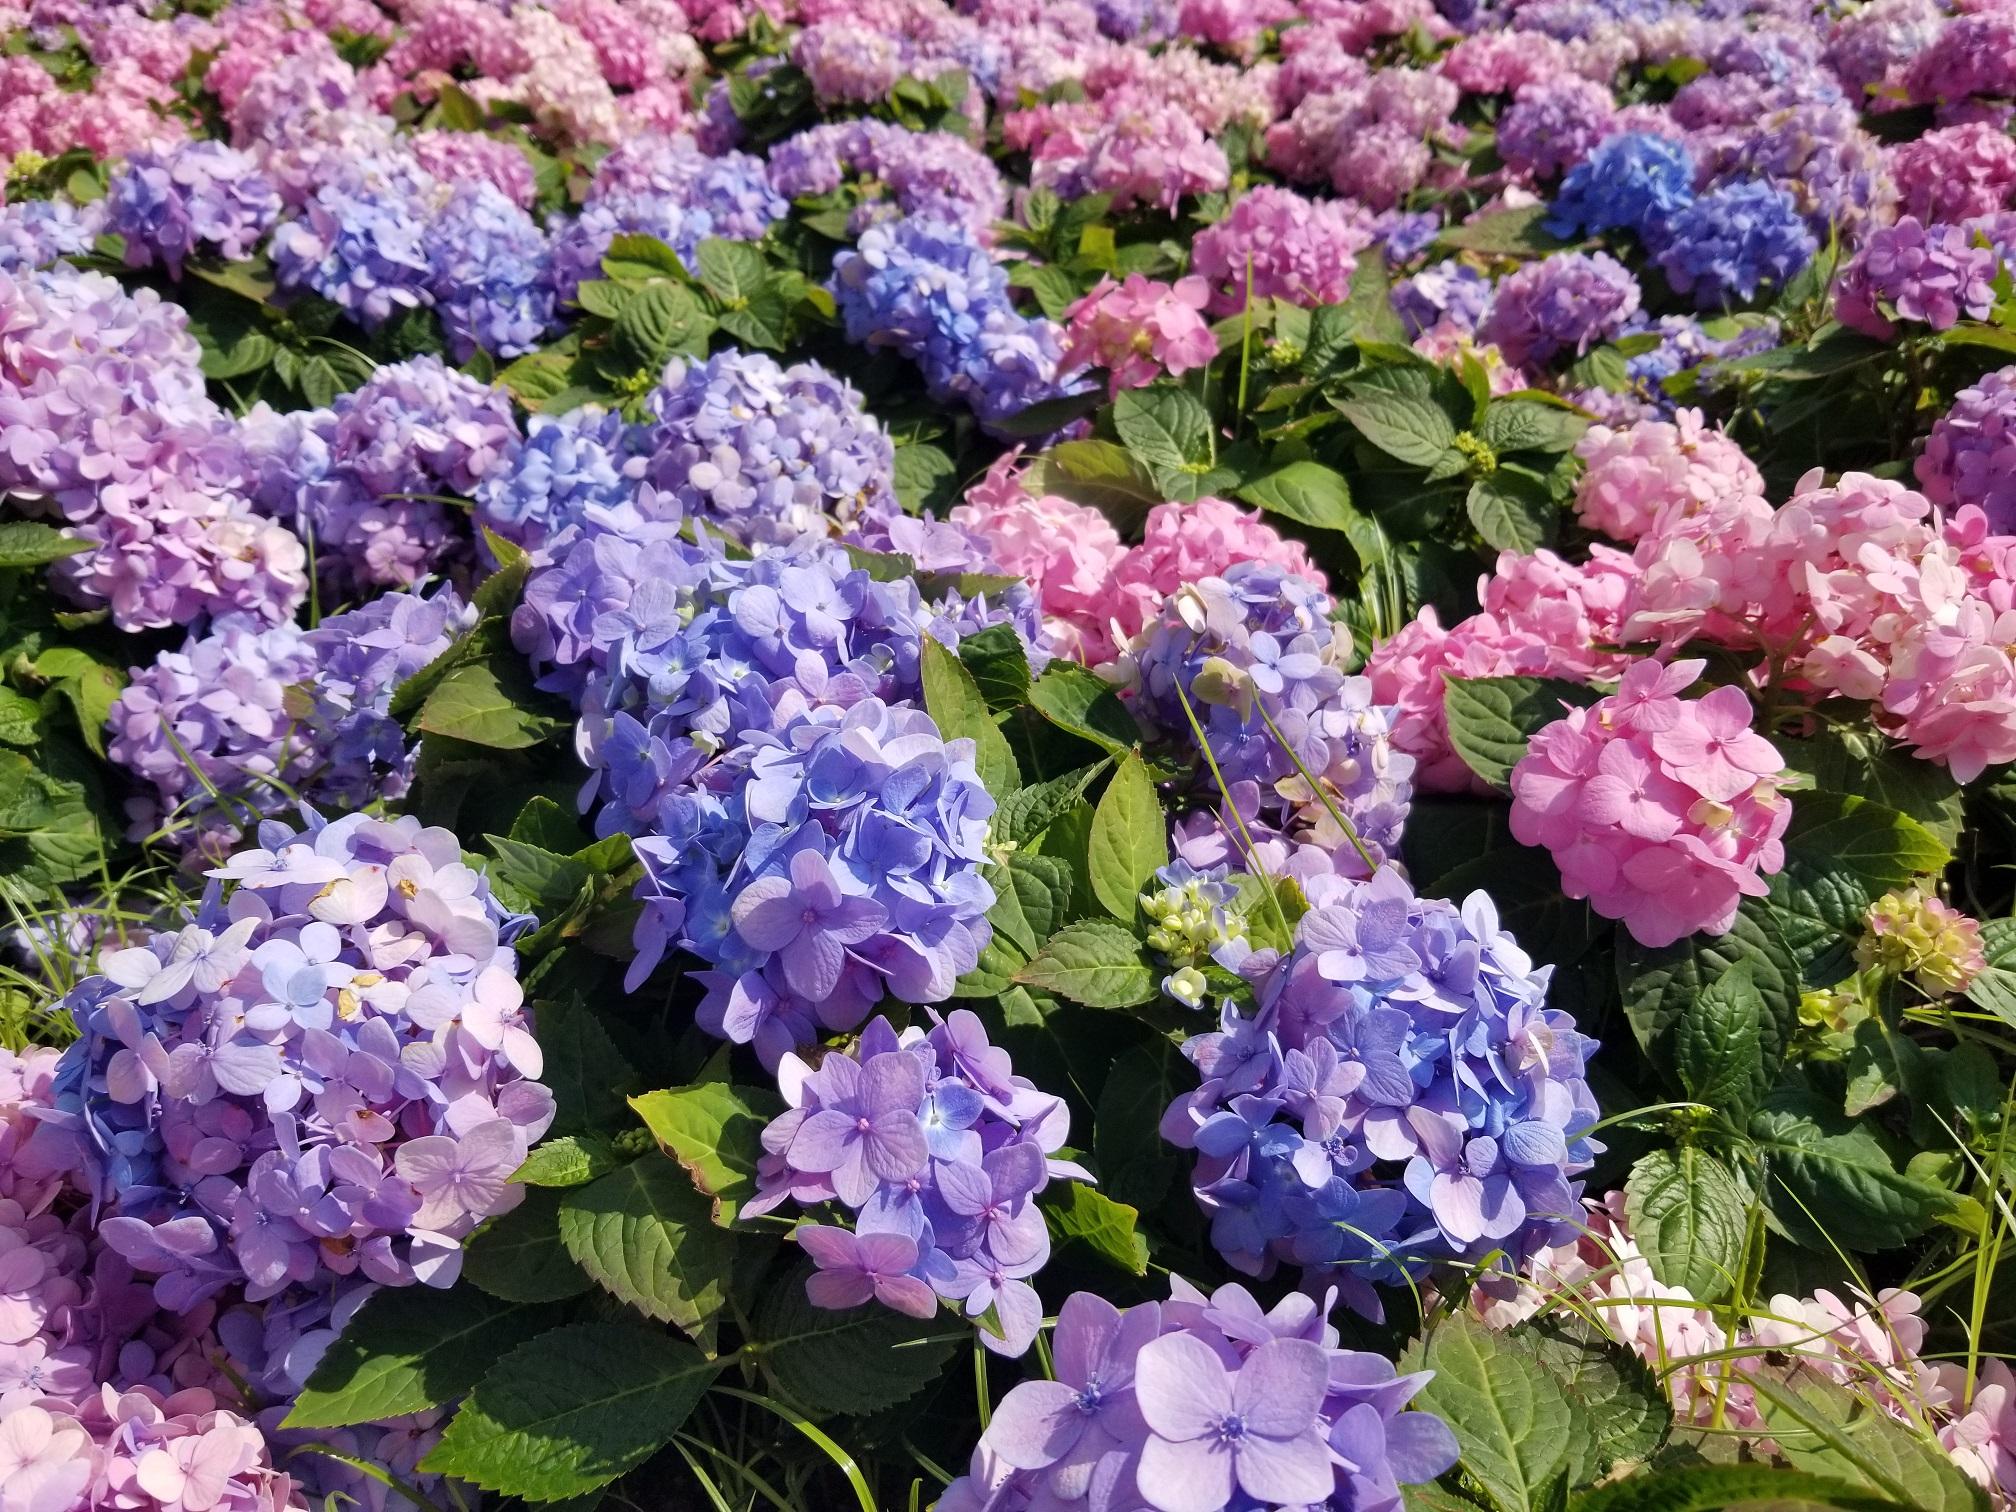 香港花卉展覽三月十日至十九日在維多利亞公園舉行，以花形嬌美獨特的繡球花為主題花。繡球花碩大亮麗，適合在庭院和花壇廣泛栽種，亦可以盆栽種植。

